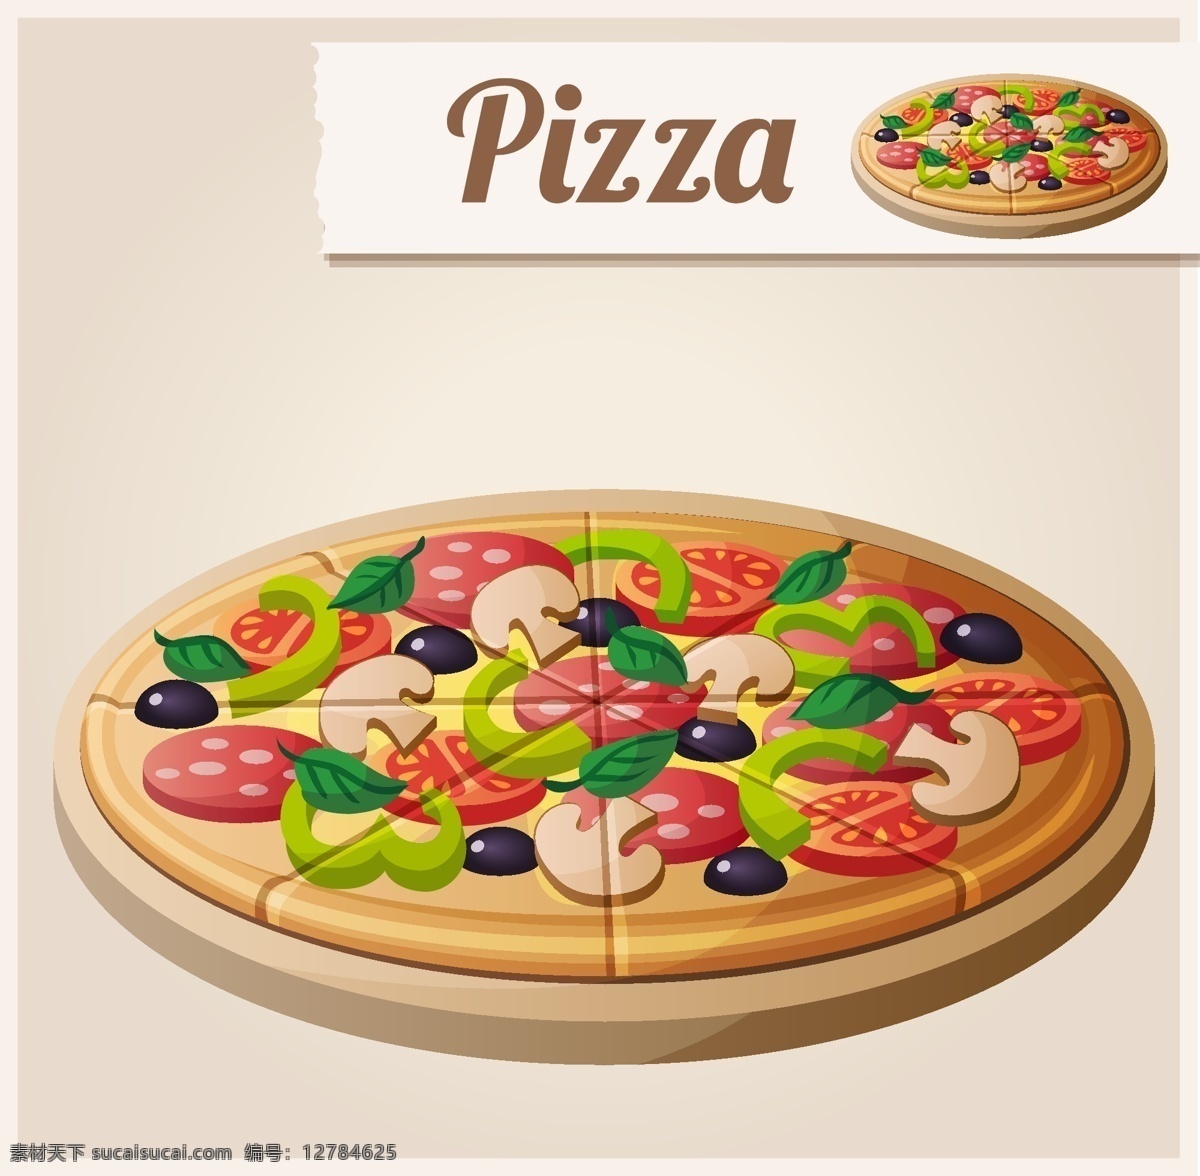 矢量 披萨 美食 模板下载 美食插画 快餐美食 卡通食物 餐饮美食 生活百科 矢量素材 白色